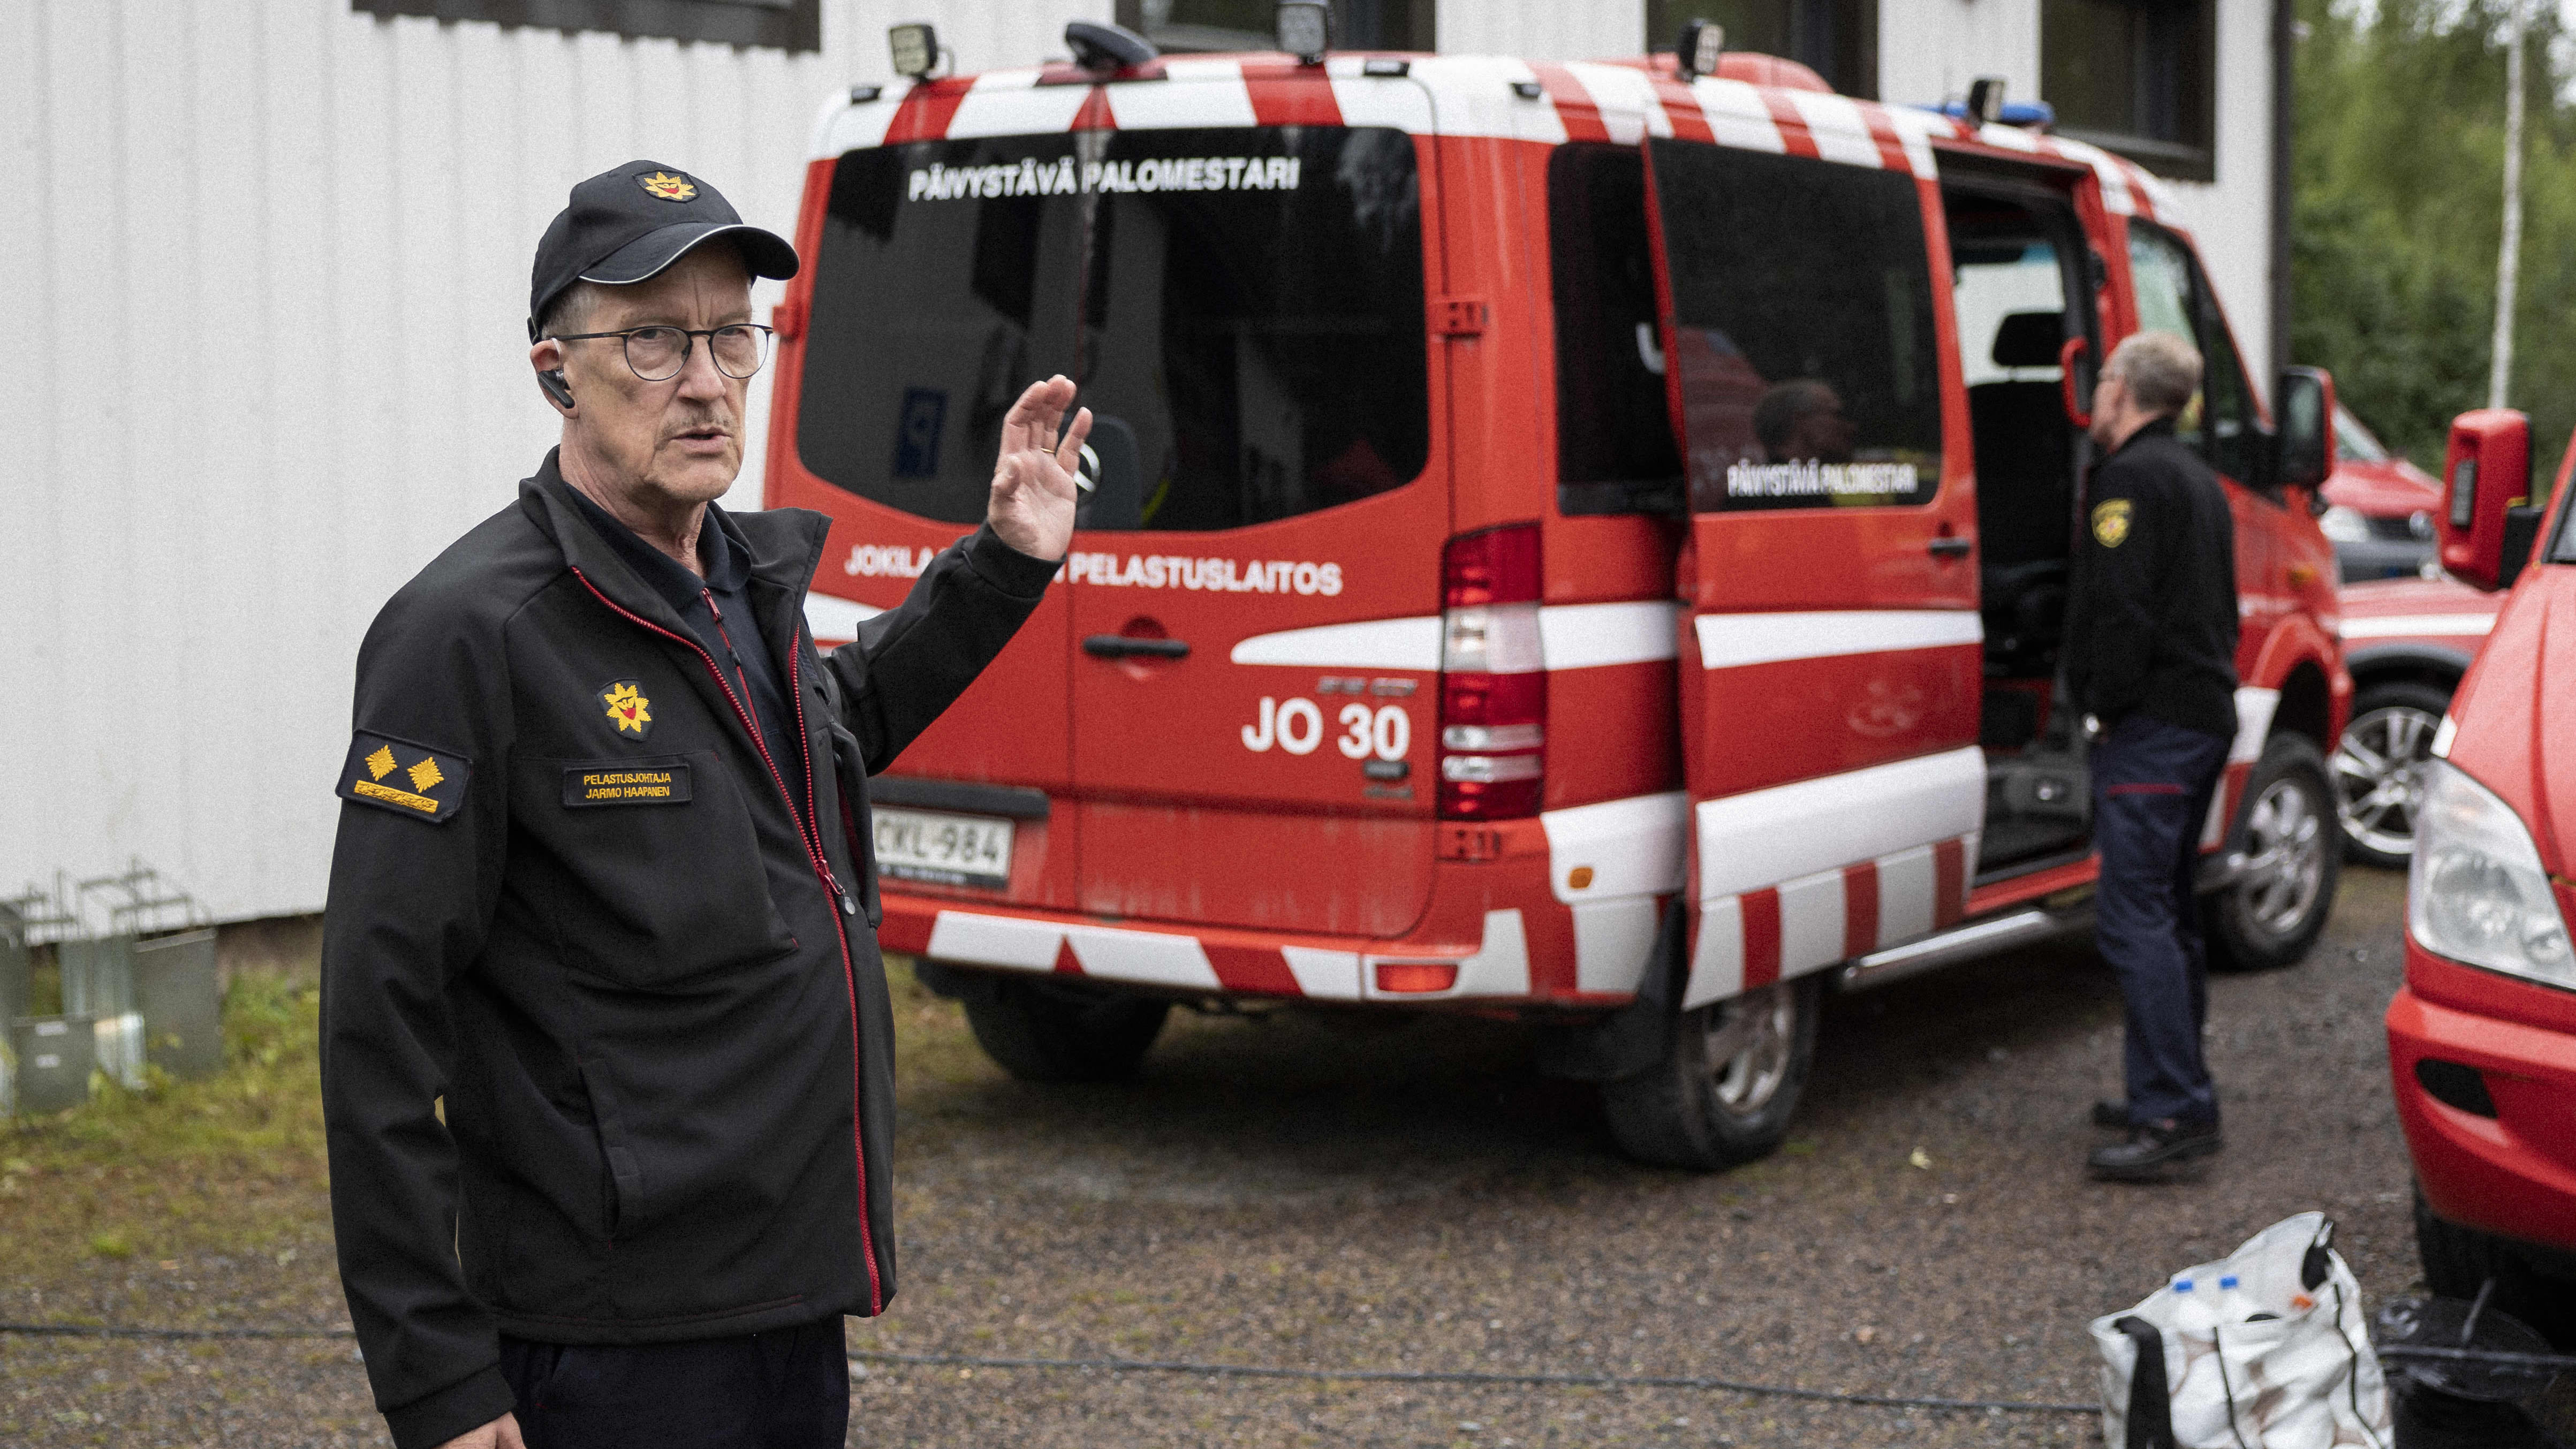 Pelastusjohtaja Jarmo Haapanen taustallaan päivystävän palomestarin auto. 